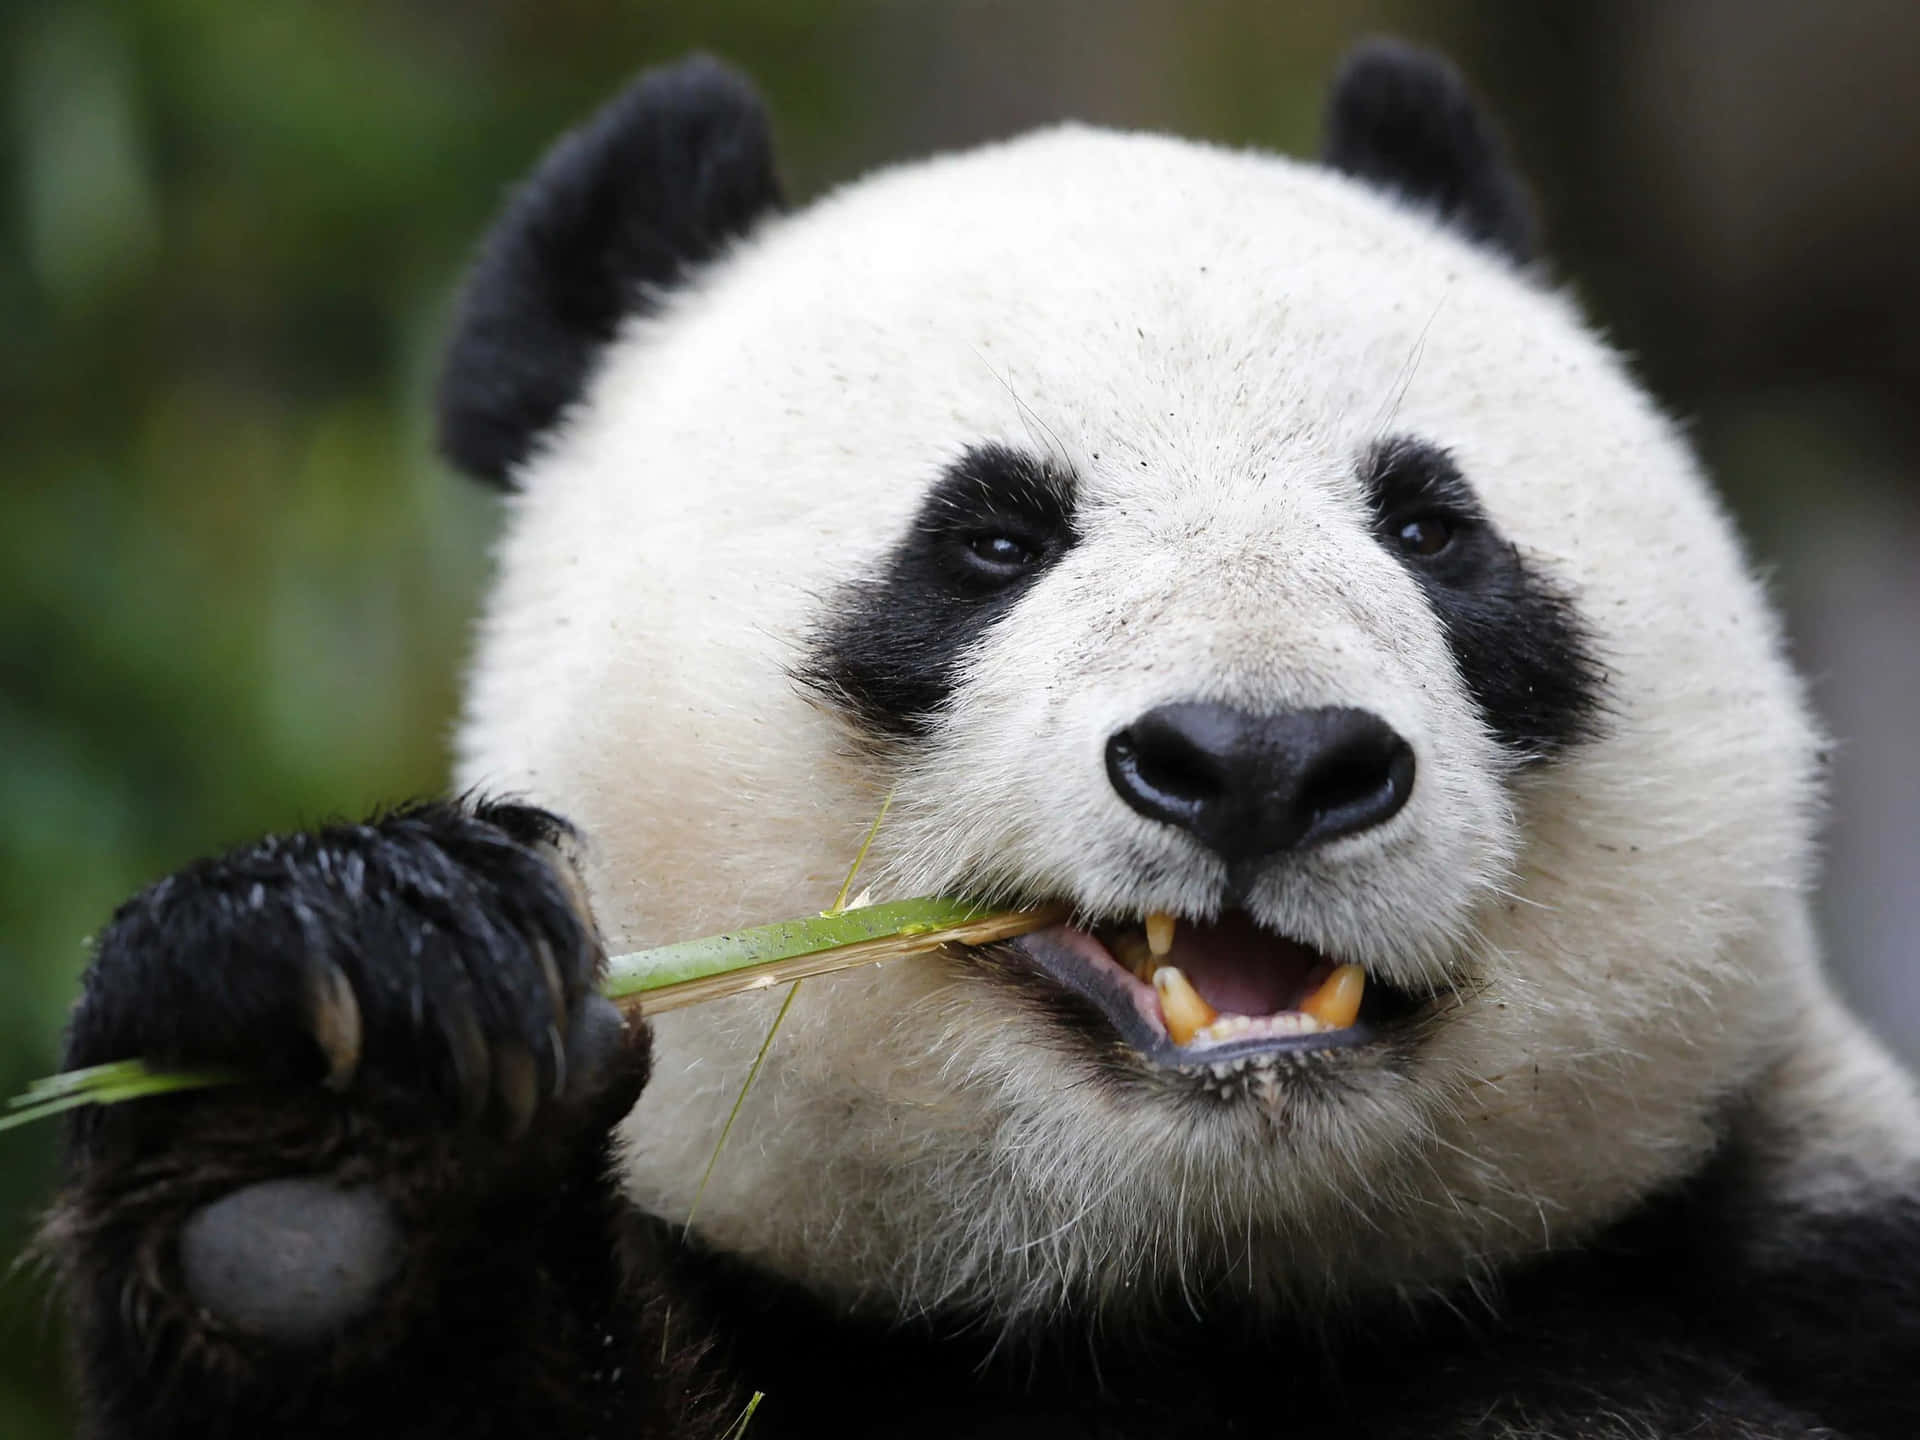 Enlekfull Svartvit Panda Björn Som Njuter Av En Snack I Sitt Naturliga Habitat.